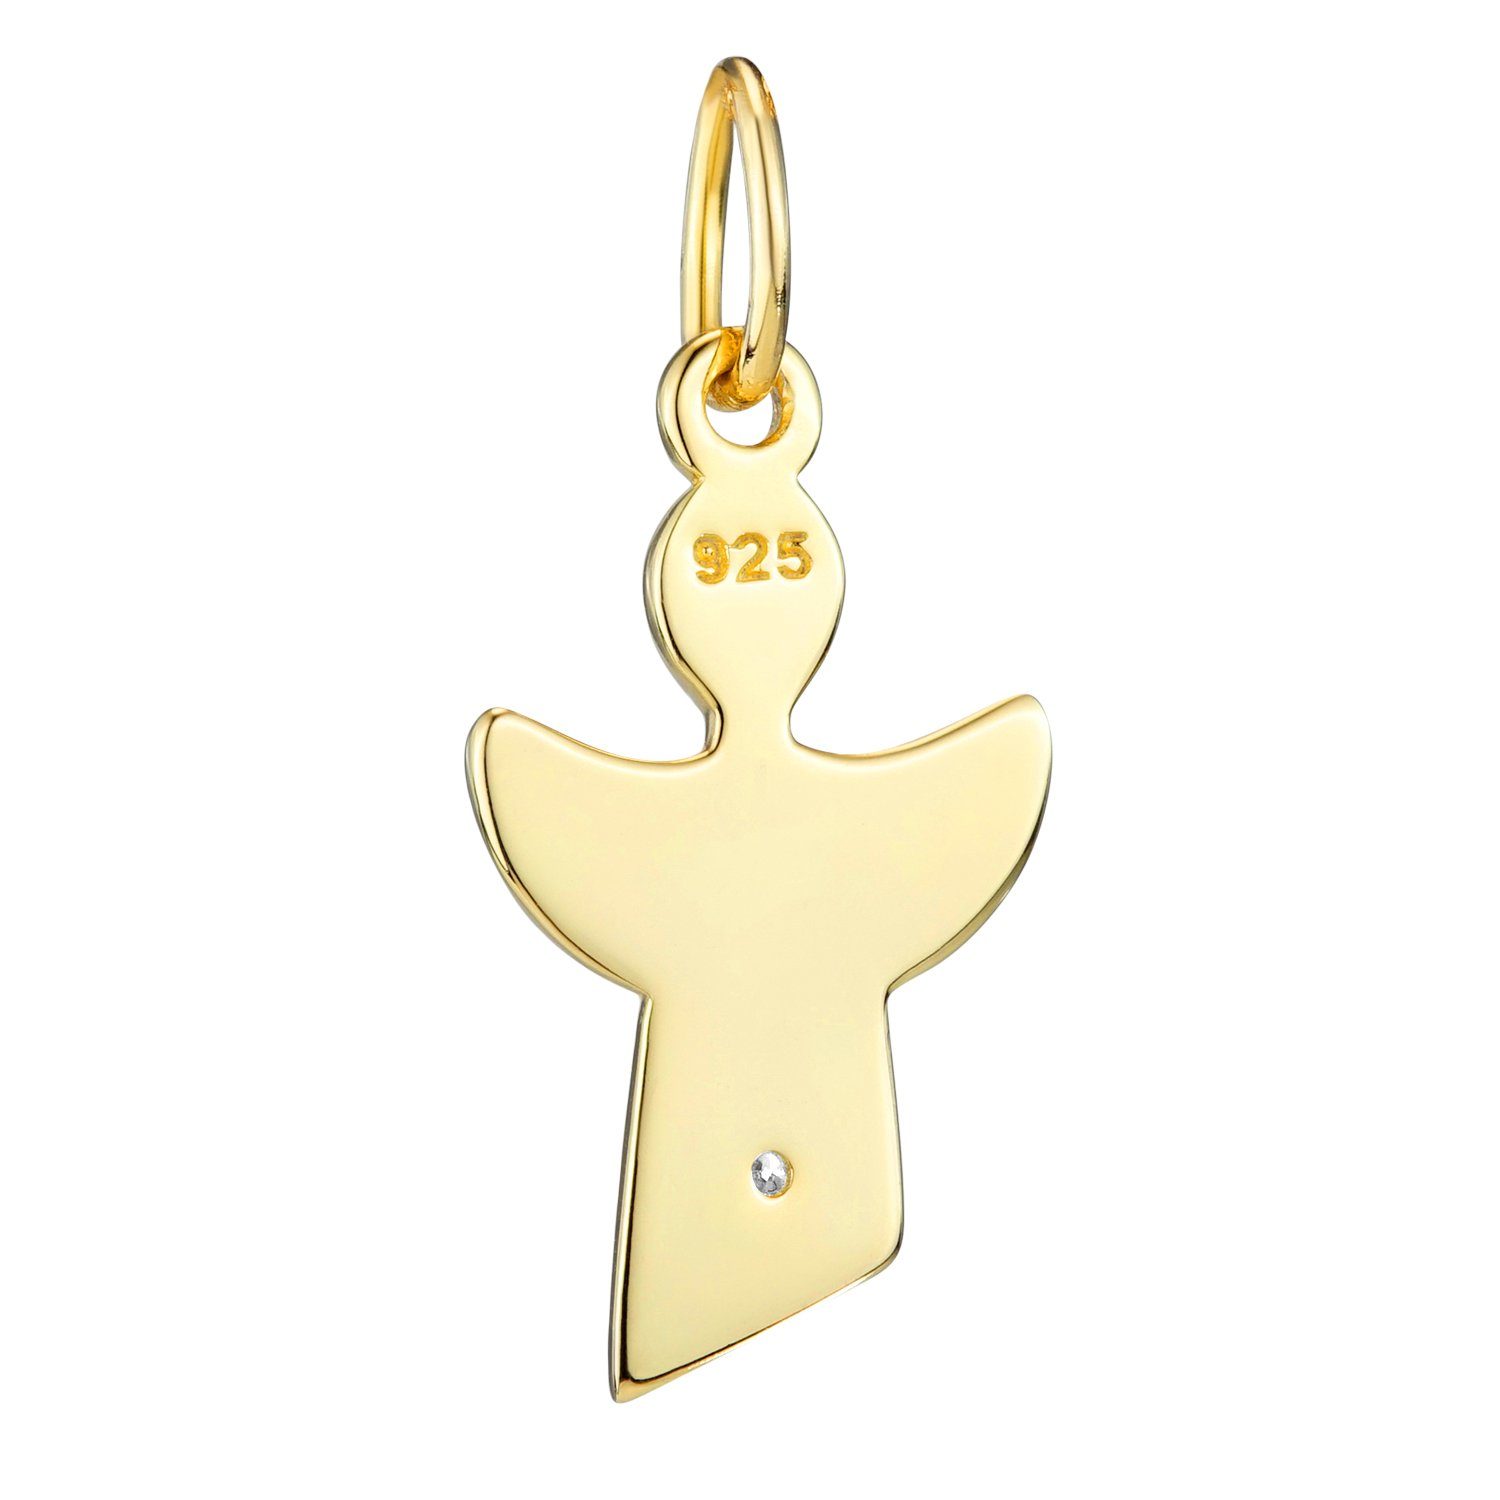 Materia Engelanhänger Schutzengel Gold Zirkonia KA-459, weiß vergoldet Sterlingsilber